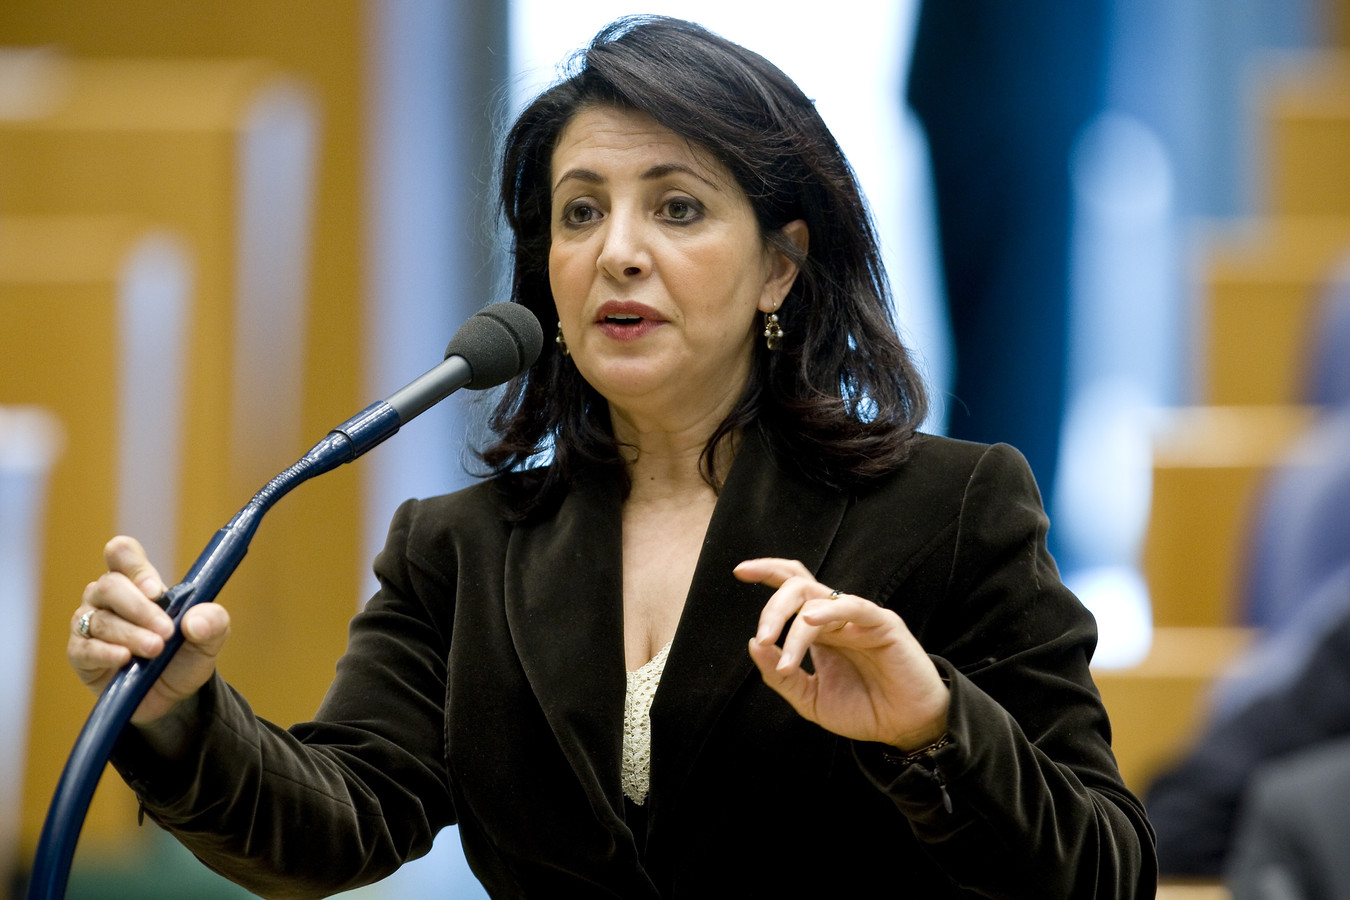 Khadija Arib van de PvdA dinsdag tijdens het Vragenuurtje in de Tweede Kamer in Den Haag.